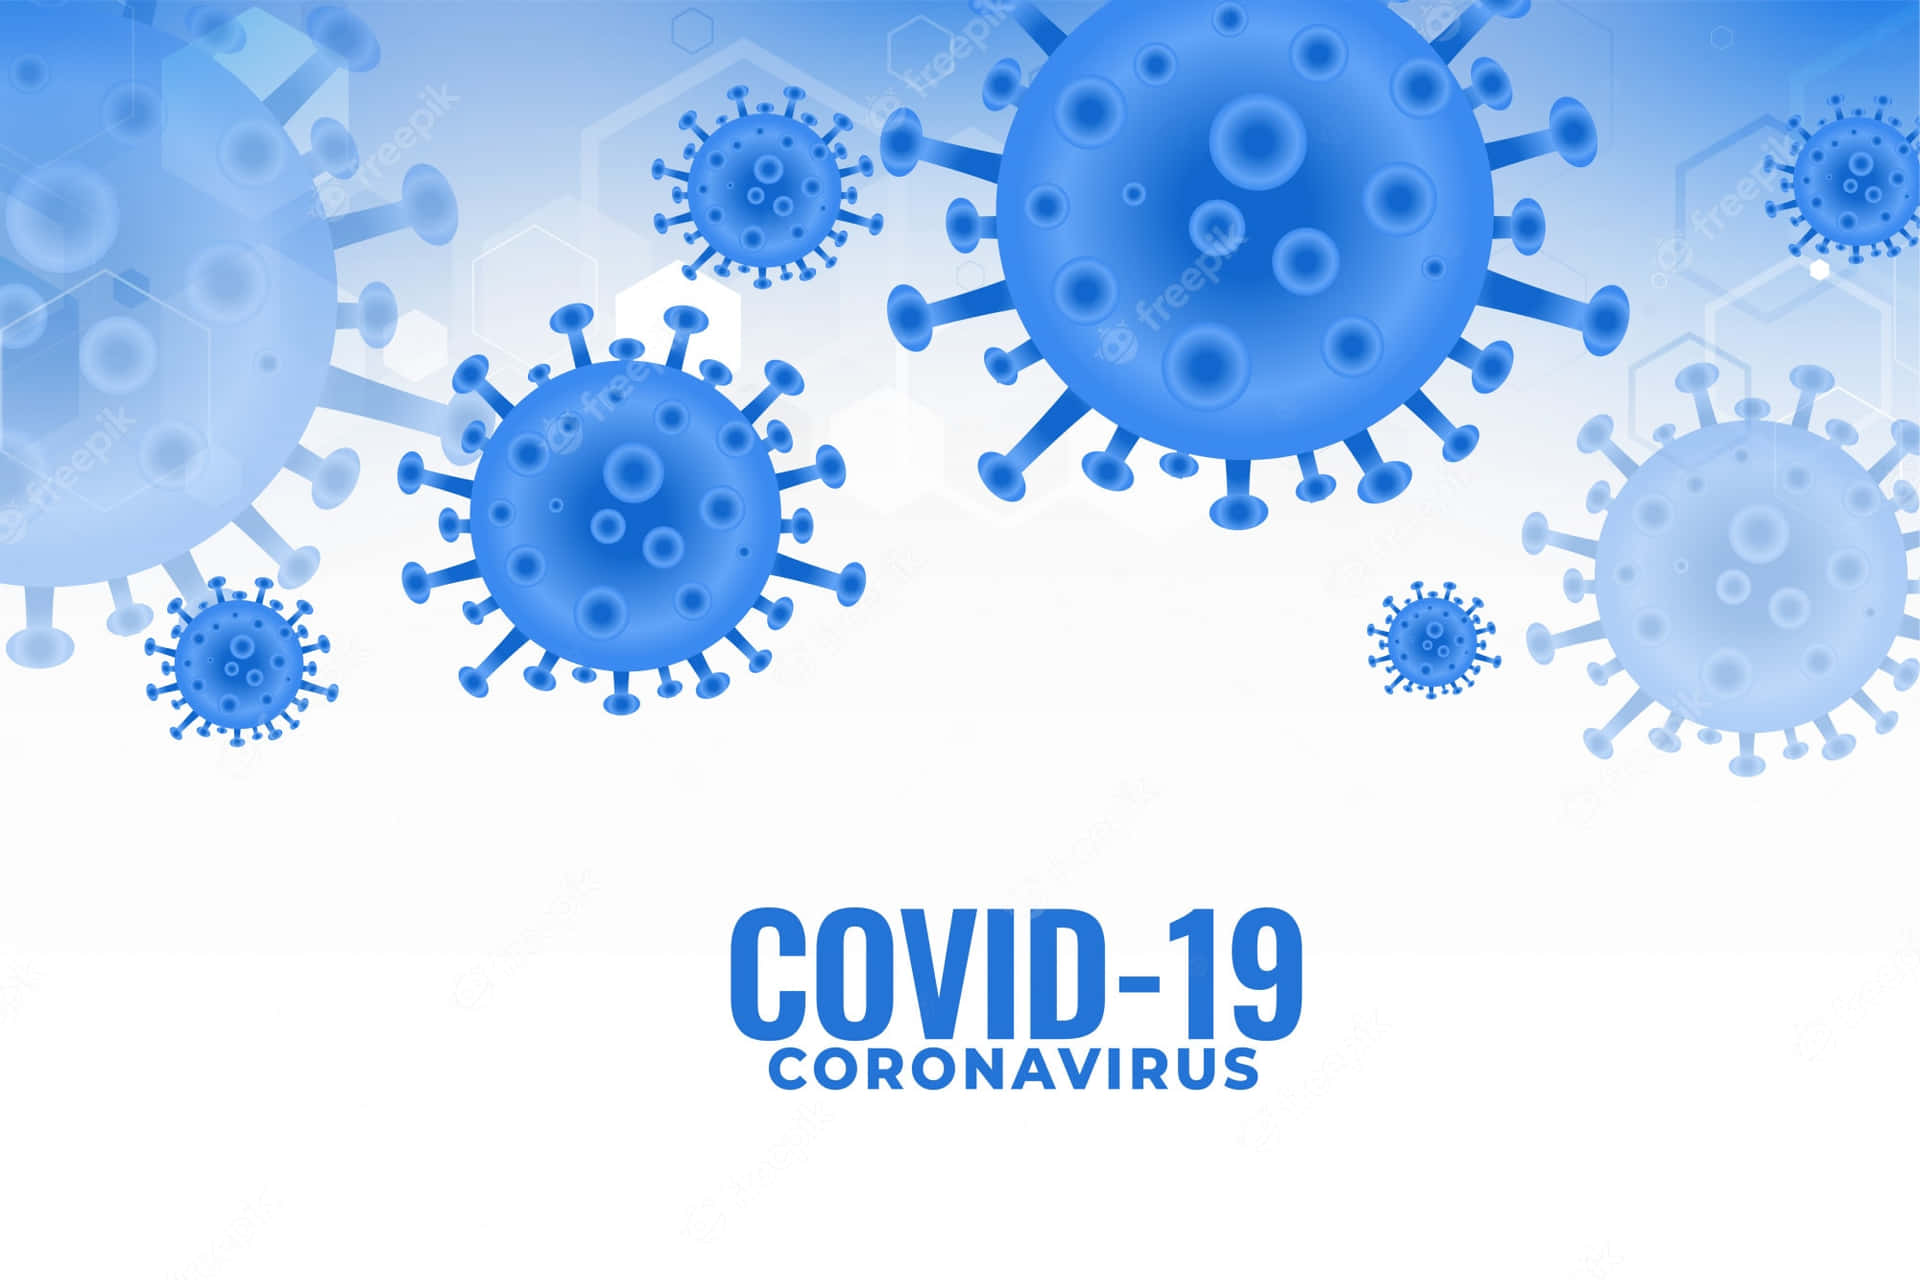 Hålldig Själv Och Din Familj Säkra Med Rätt Information Och Förebyggande Åtgärder Kring Coronaviruset.